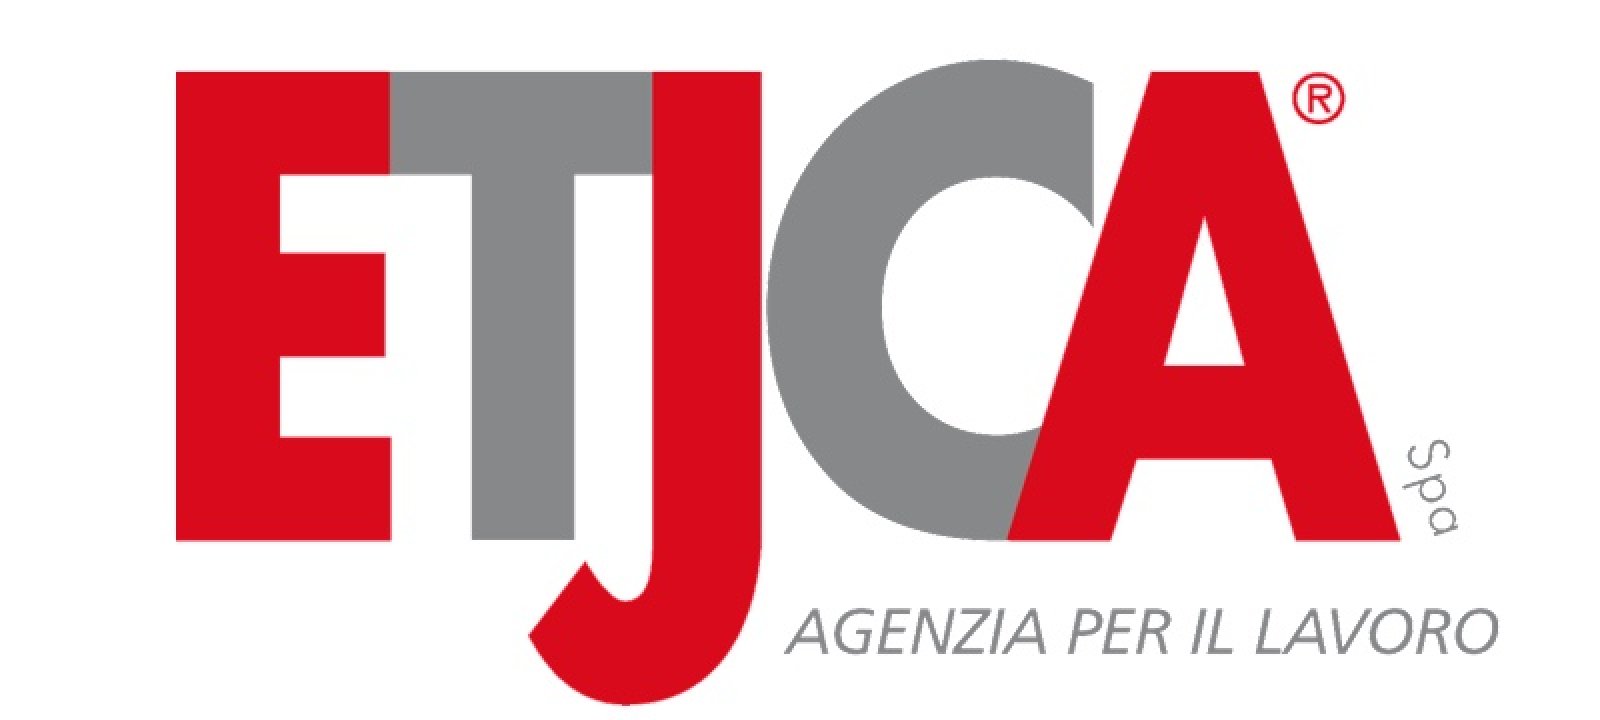 Logo ETJCA S.P.A.